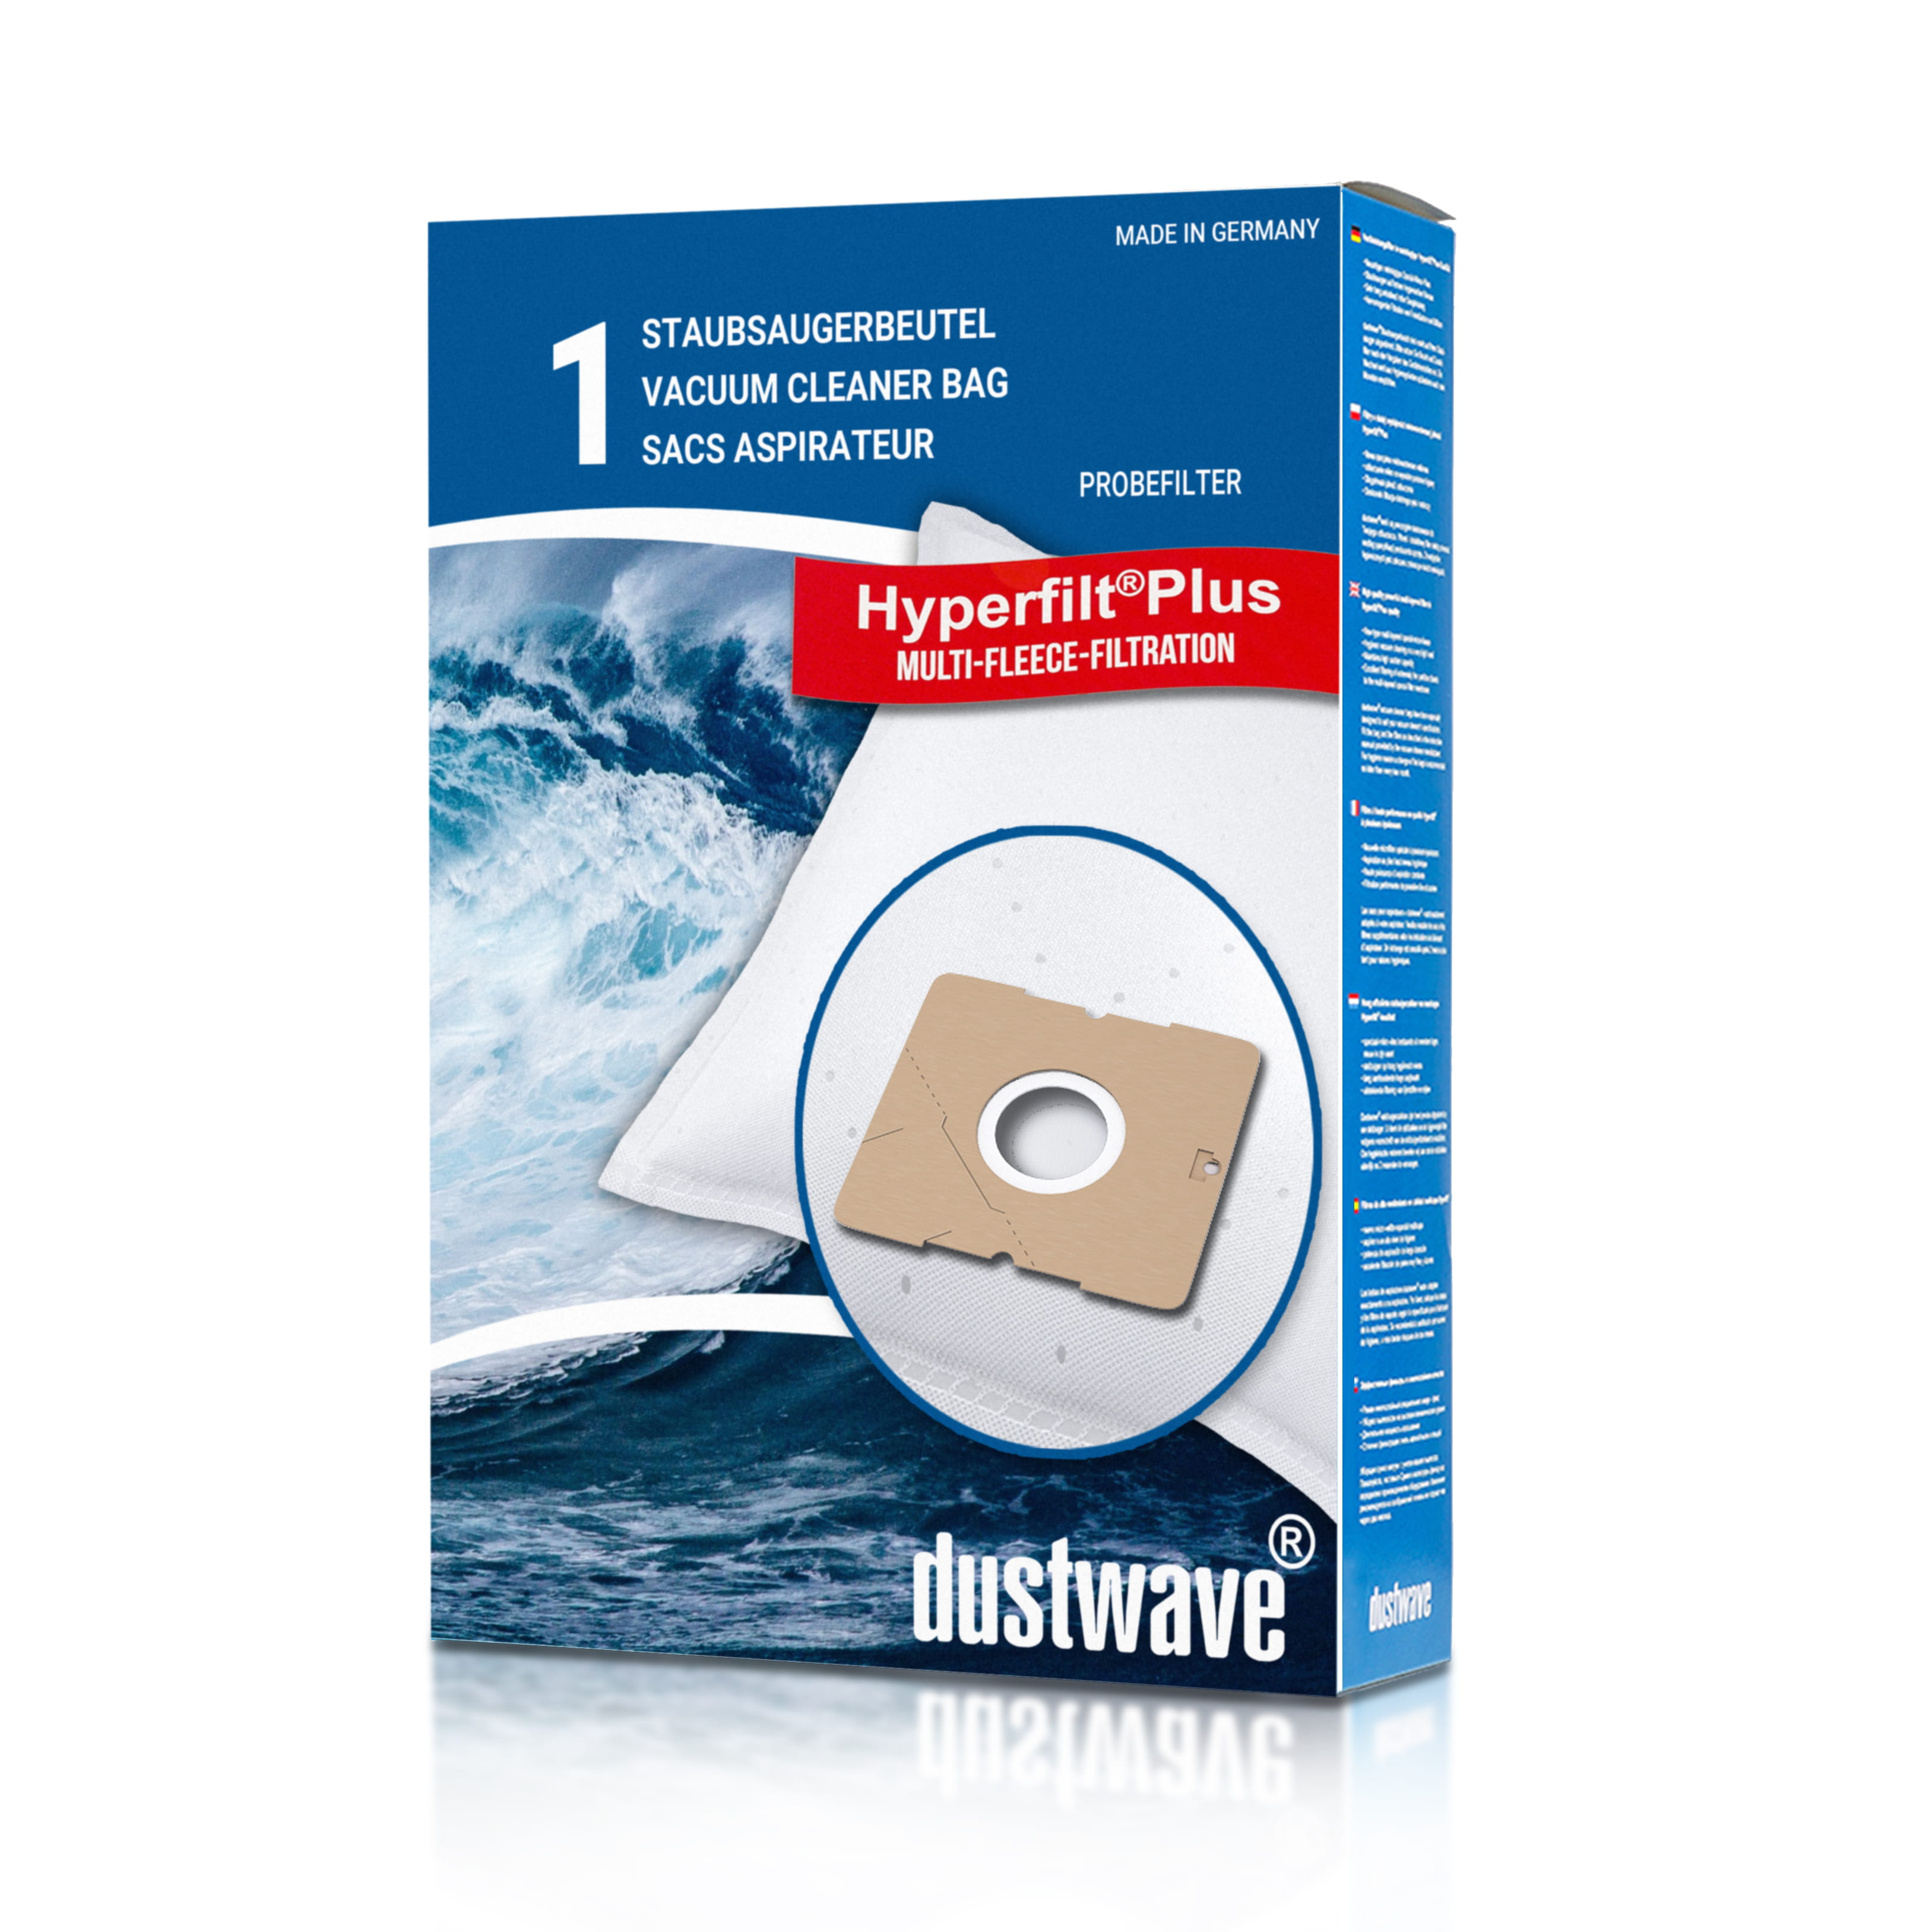 Dustwave® 1 Staubsaugerbeutel für AEG Smart 307 - hocheffizient mit Hygieneverschluss - Made in Germany